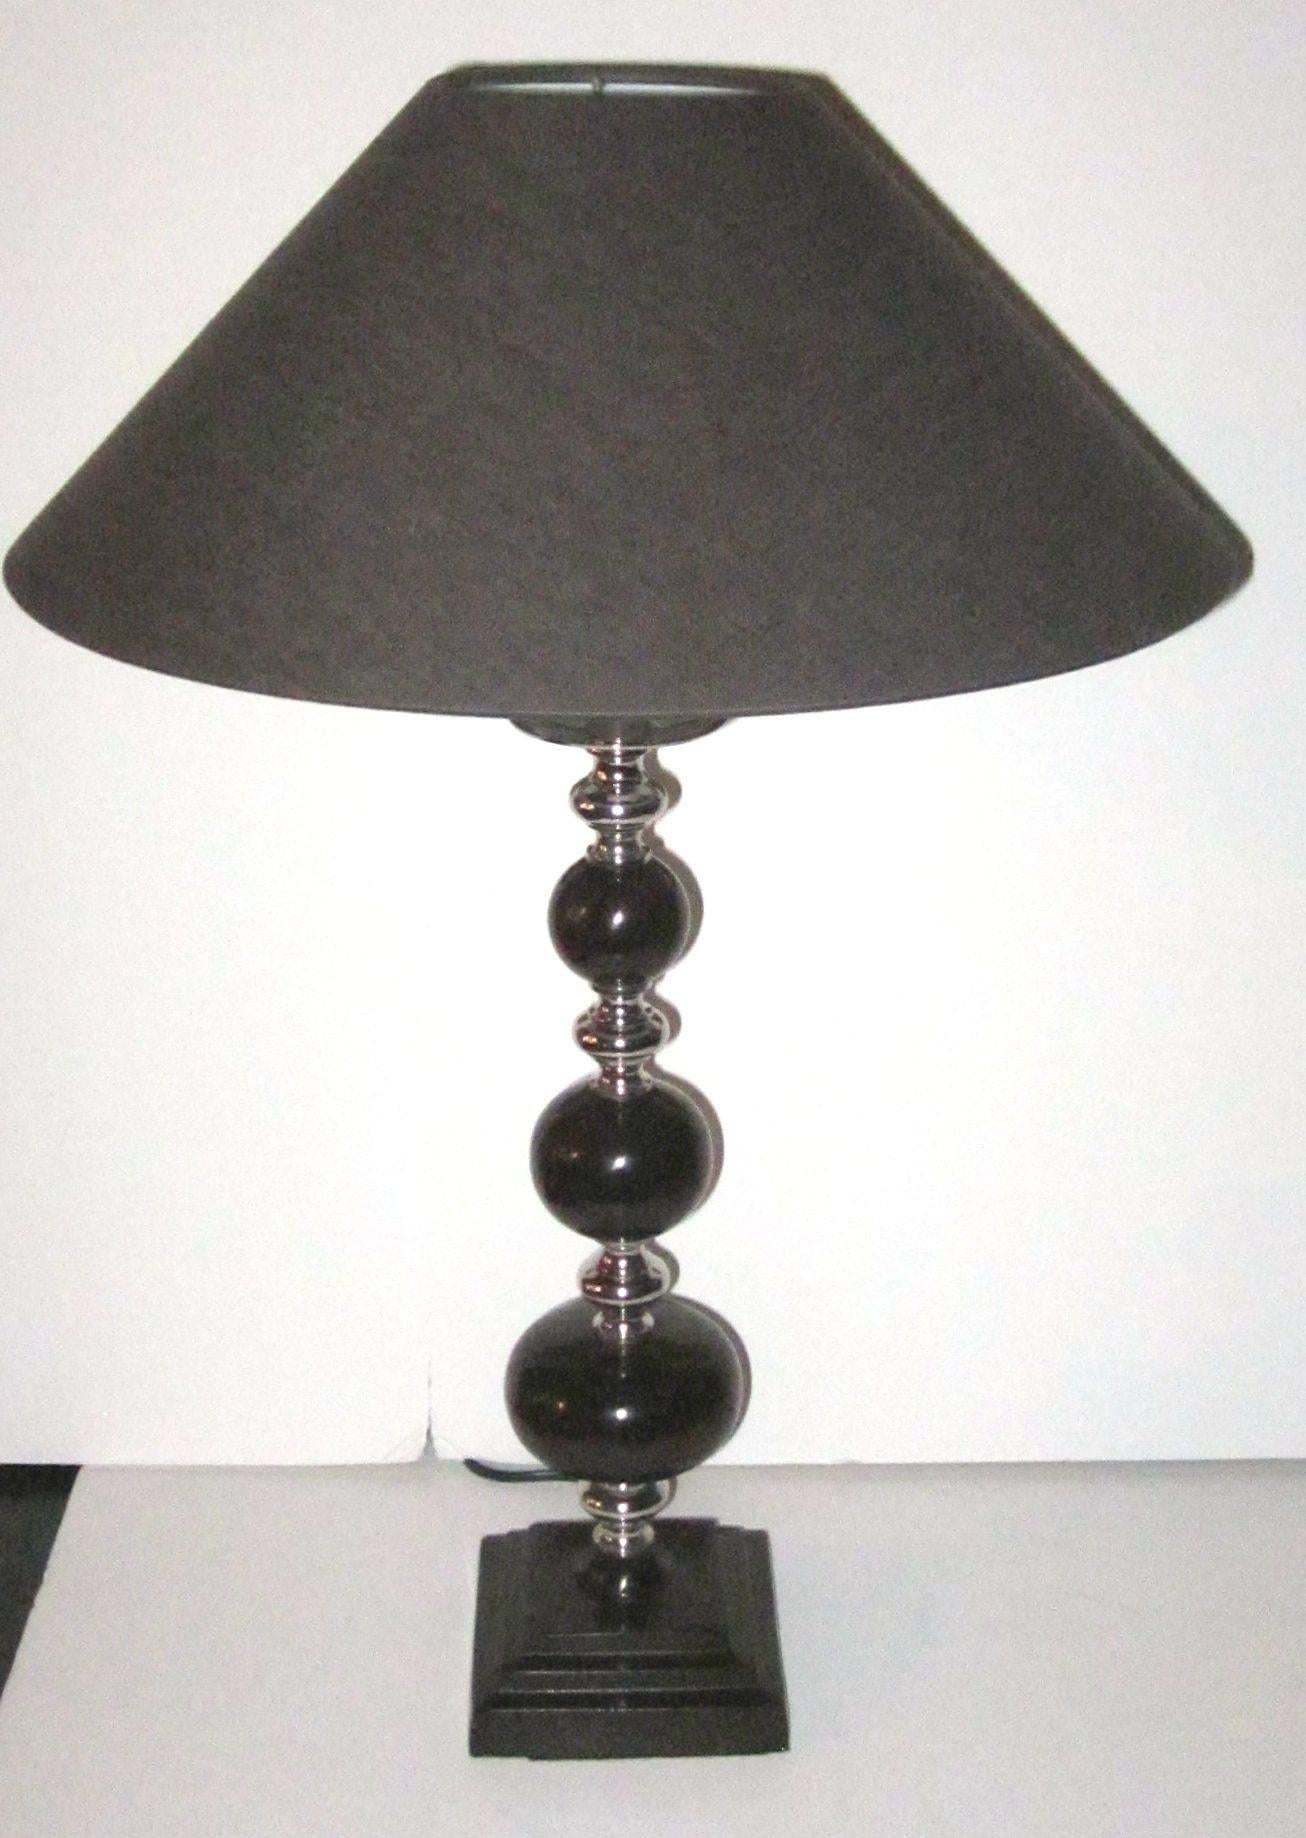 Zeitgenössisches Paar dunkelbrauner Tischlampen mit verchromtem Rand.
Europäische Steckdosen.
Die Lampenschirme sind nicht enthalten.
Die maximale Wattleistung beträgt 60 Watt pro Lampe.